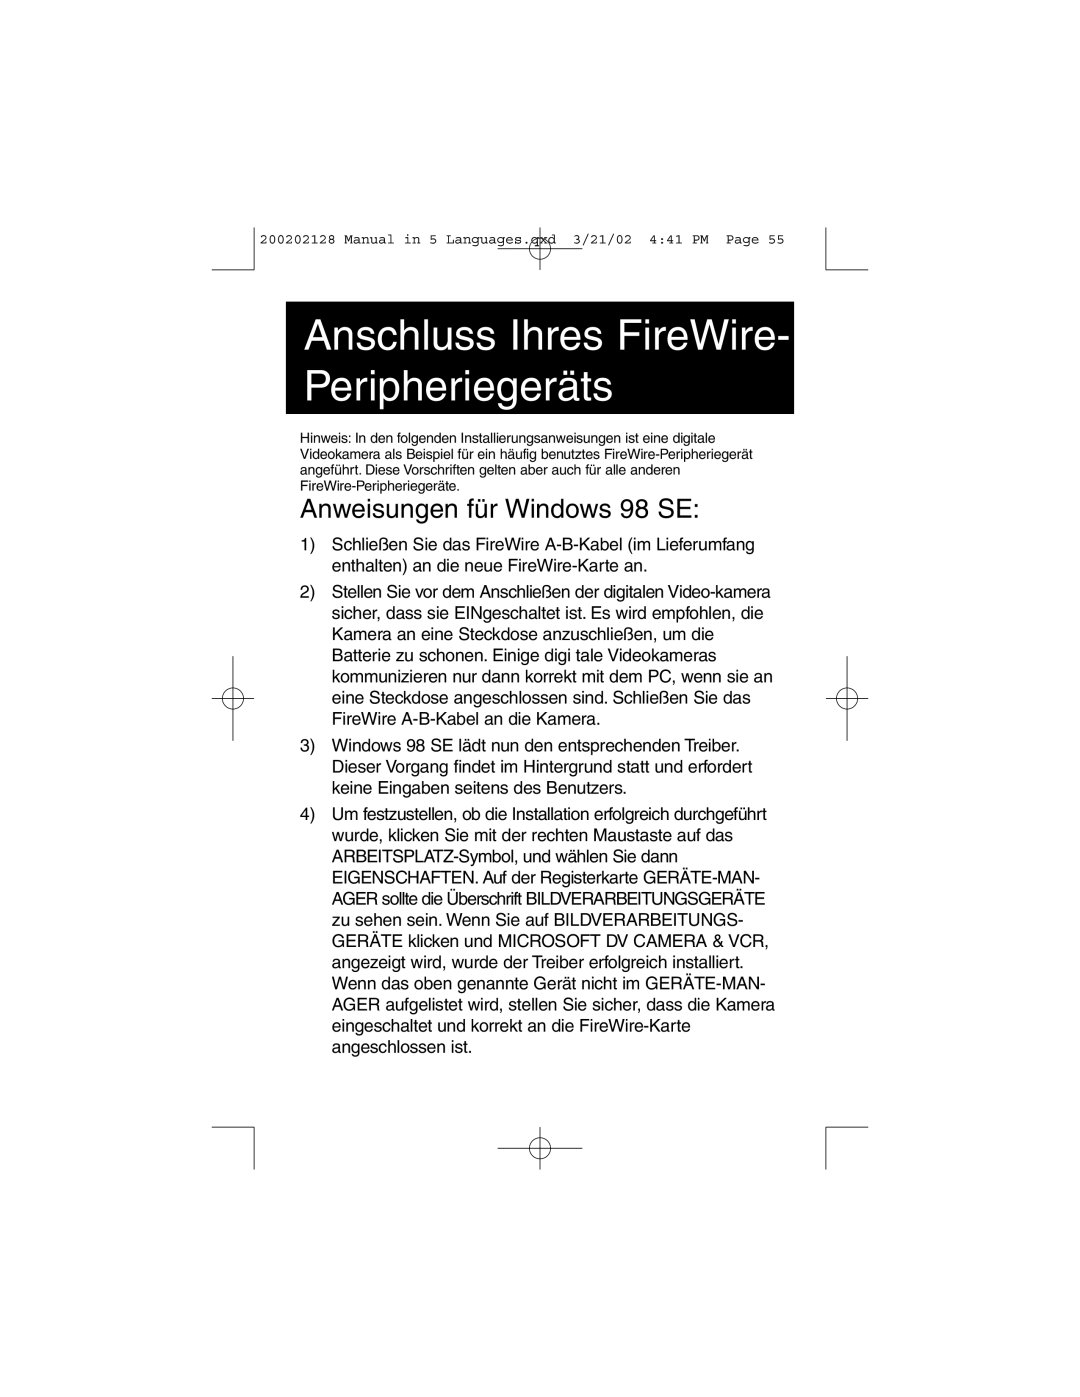 Tripp Lite F200-003-R user manual Anschluss Ihres FireWire Peripheriegeräts, Anweisungen für Windows 98 SE 